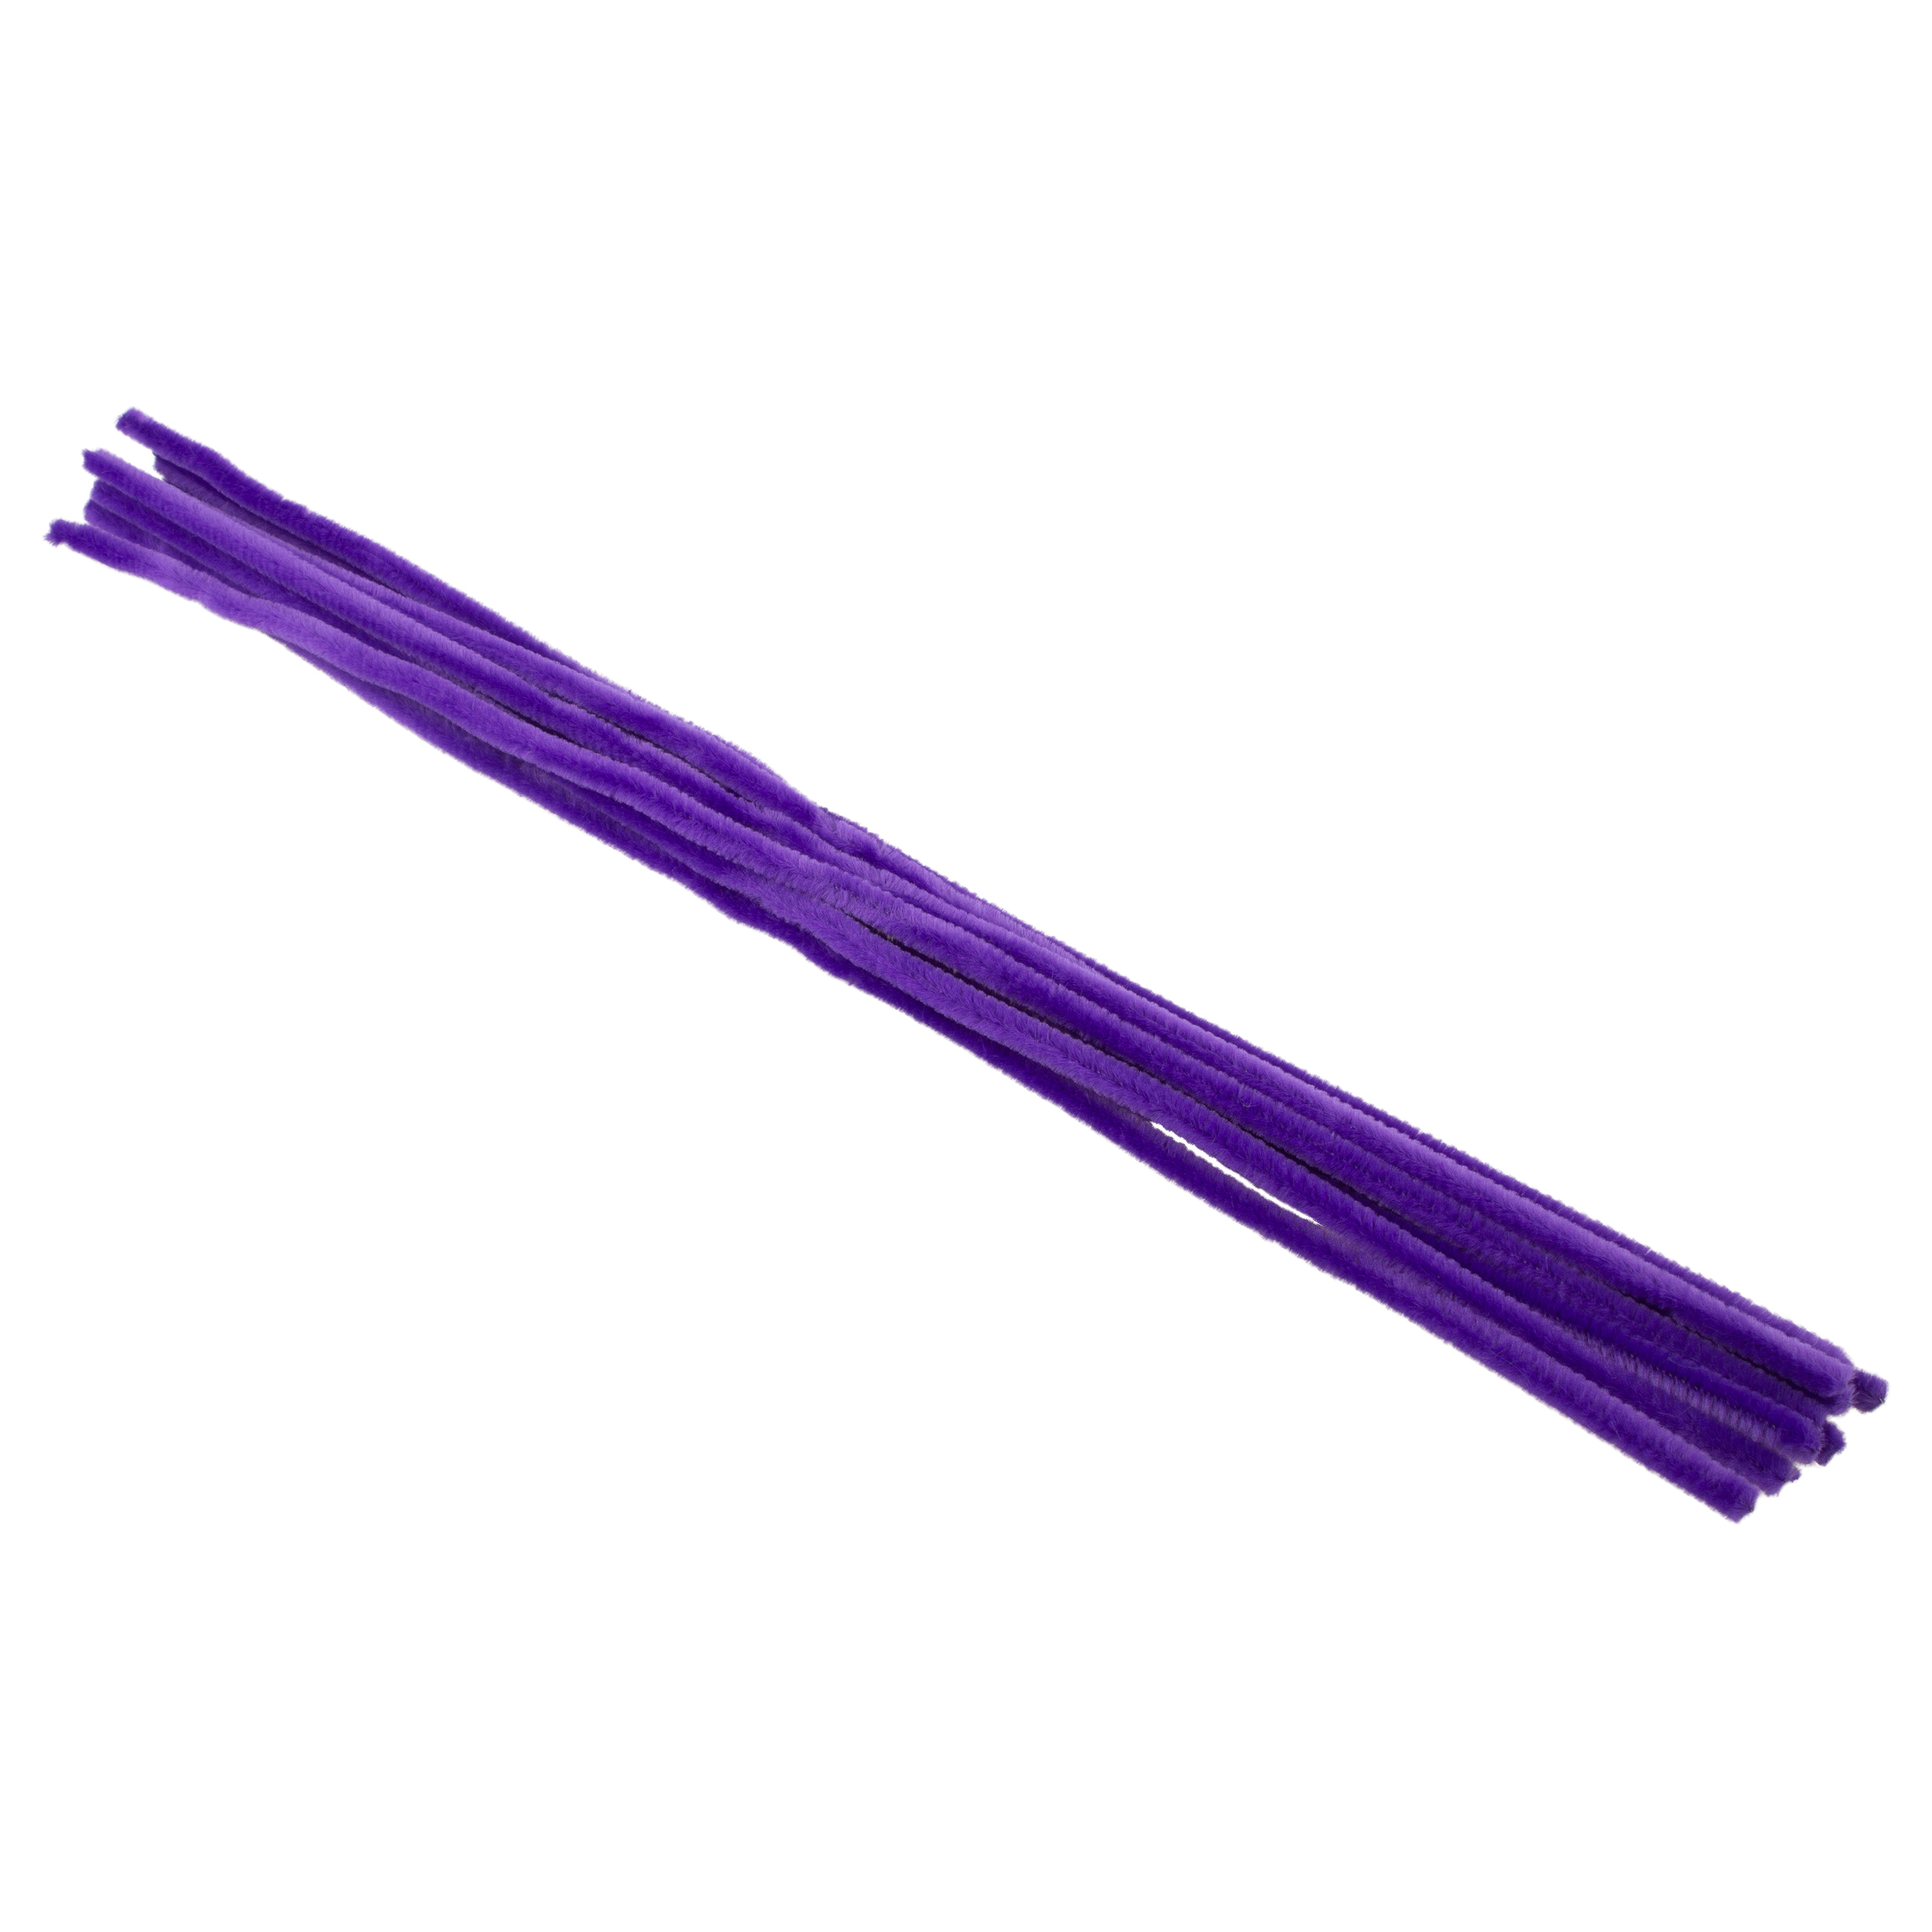 Pfeifenputzer violett, 10 Stück, L: 50 cm